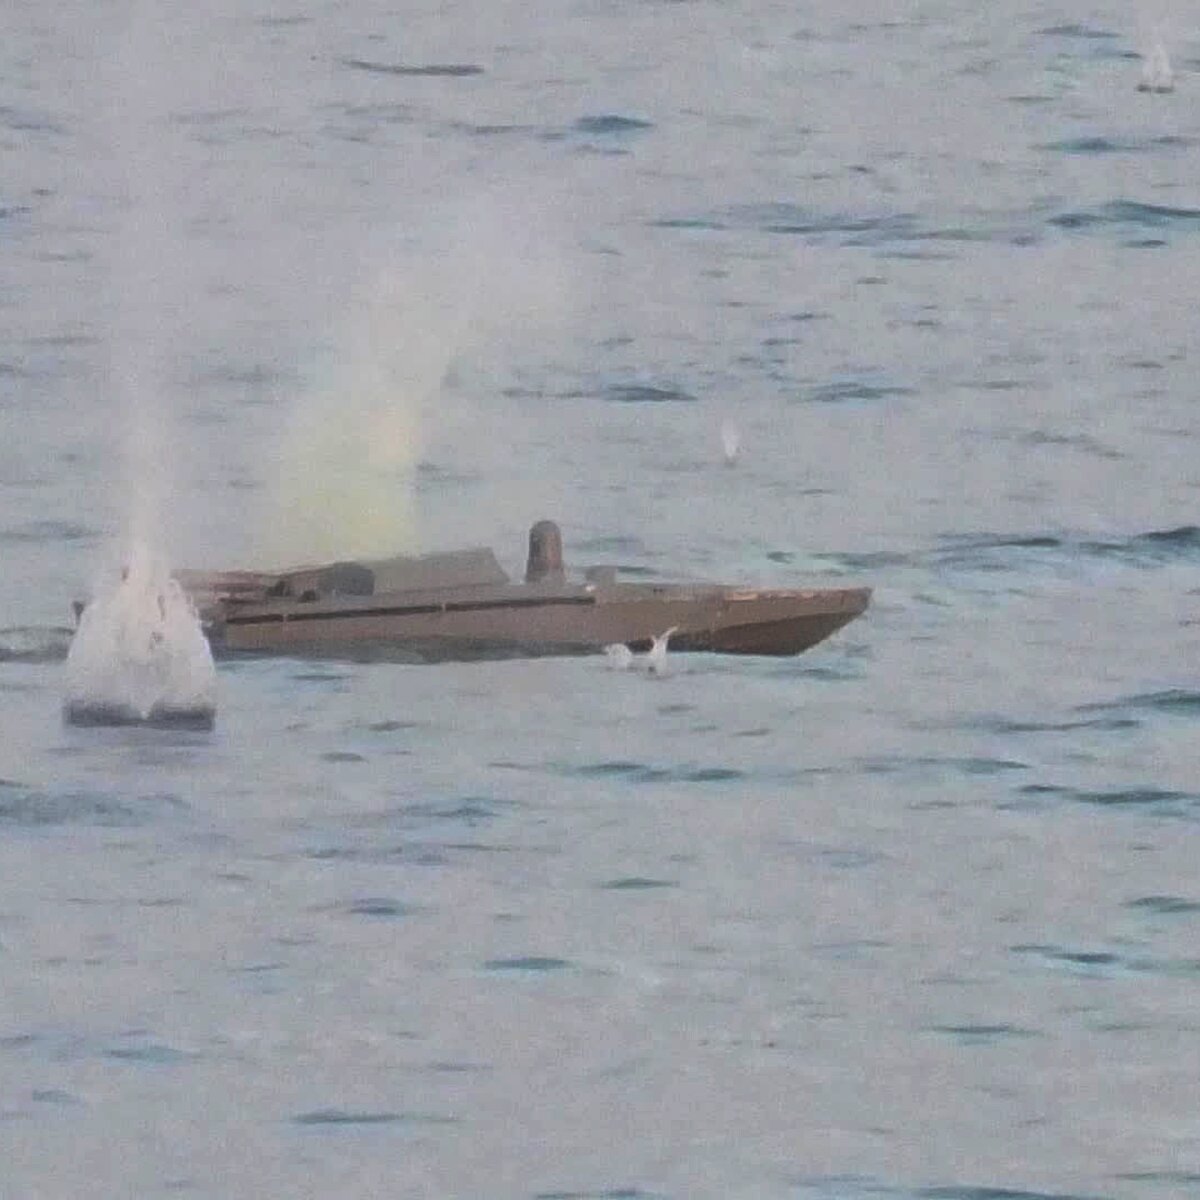 Qara dənizdə iki pilotsuz kater vuruldu